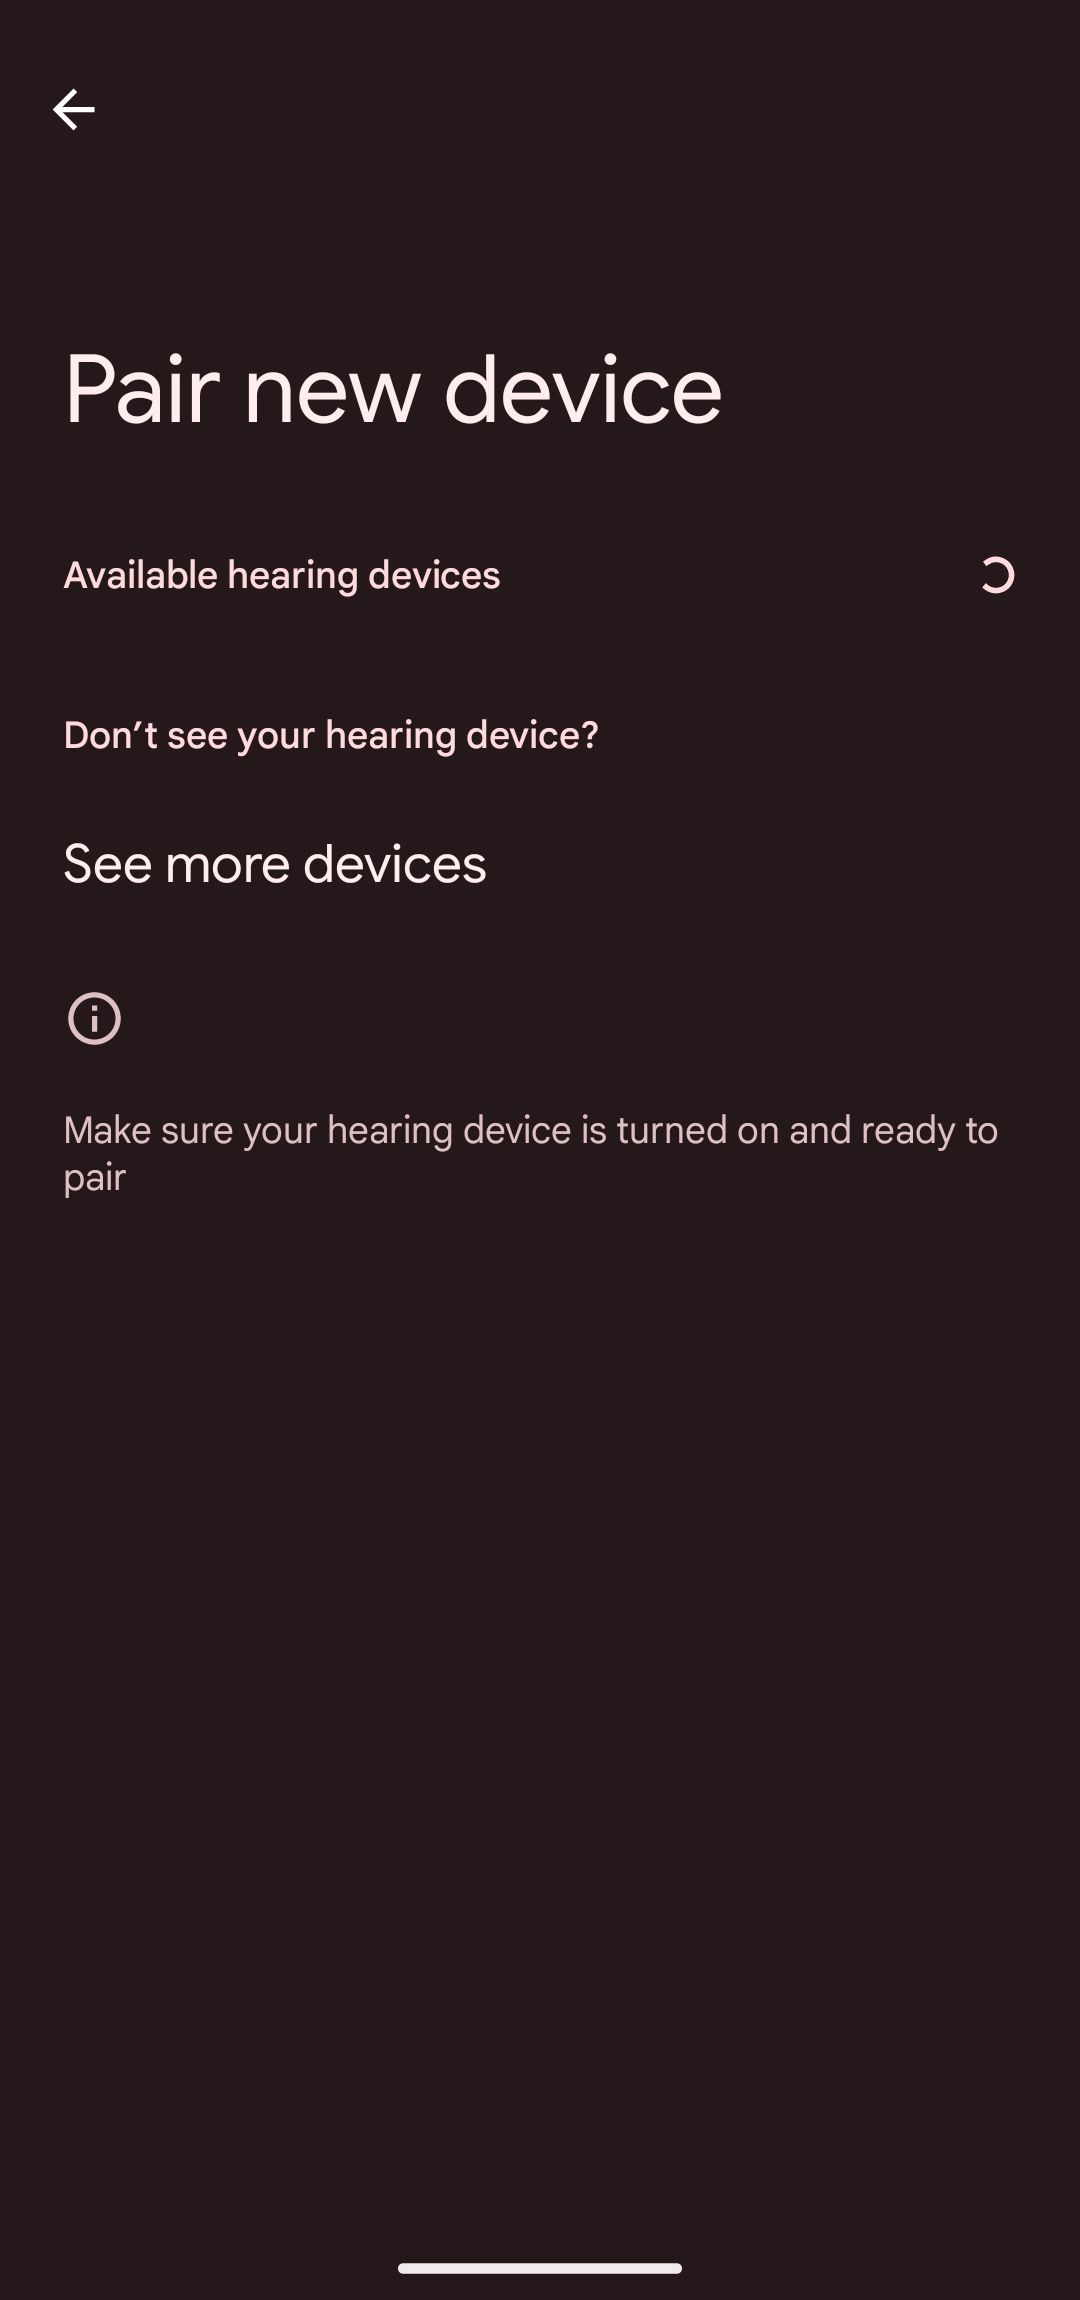 Emparelhe um novo dispositivo para adicionar aparelhos auditivos